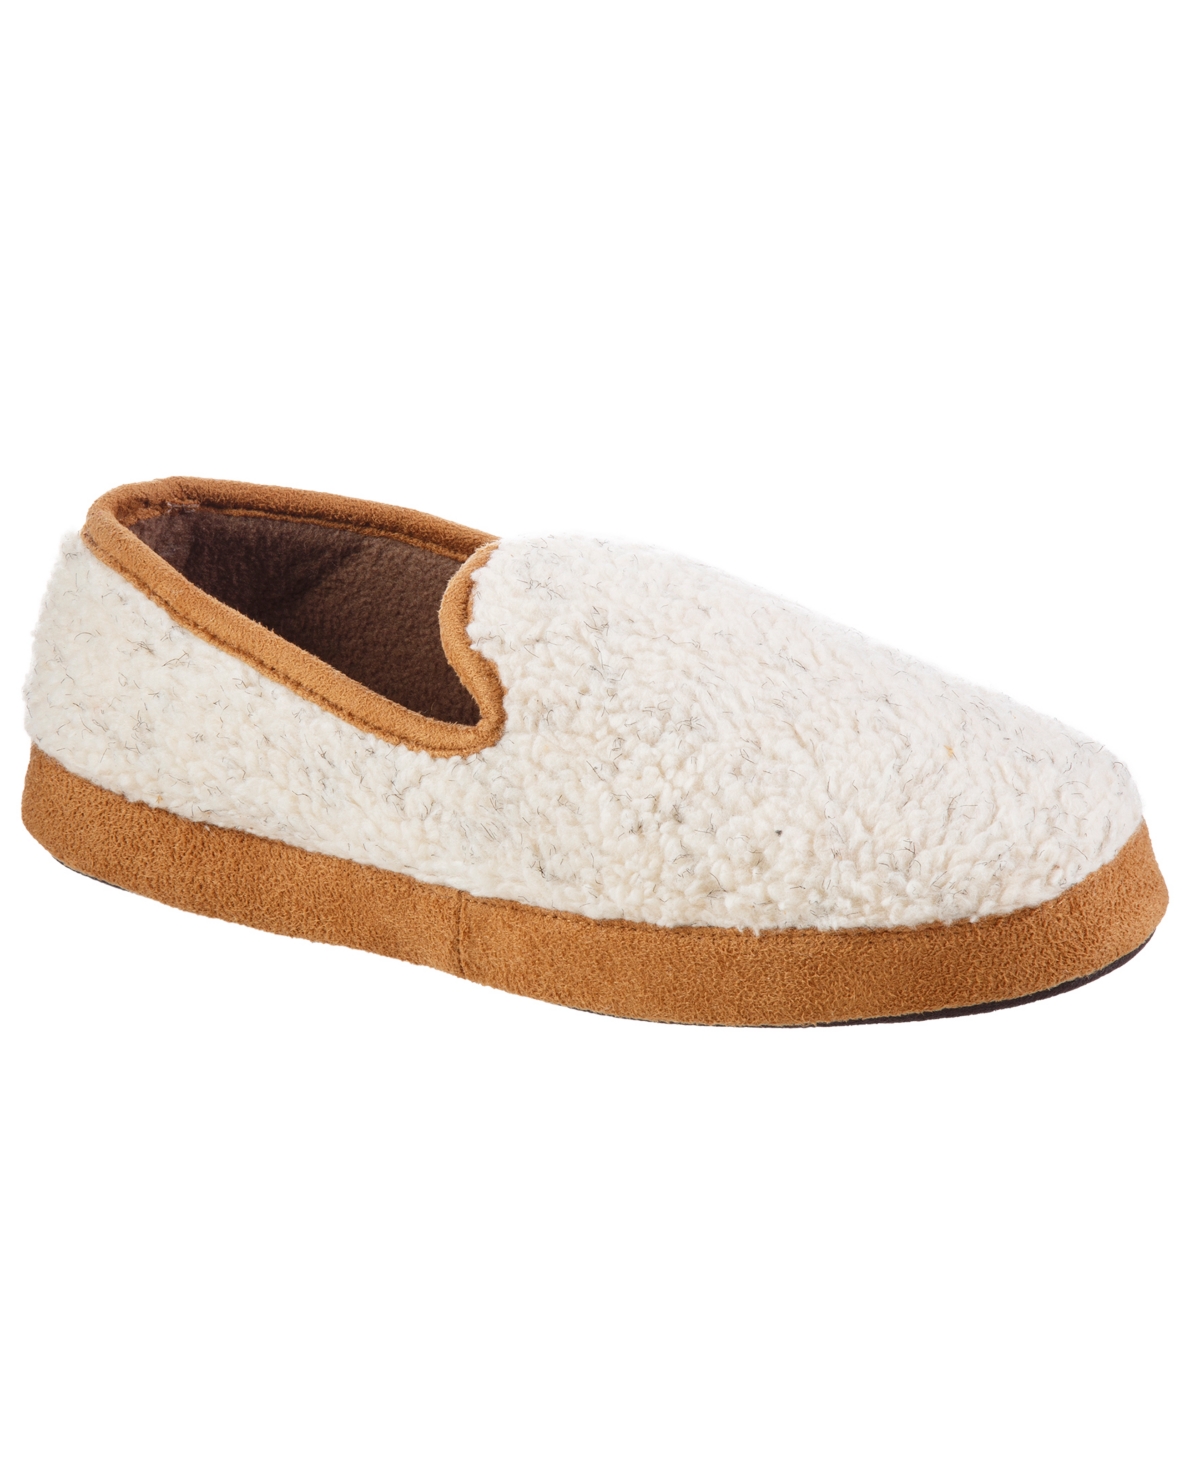 Isotoner Men's Memory Foam Berber Rhett Loafer Slippers